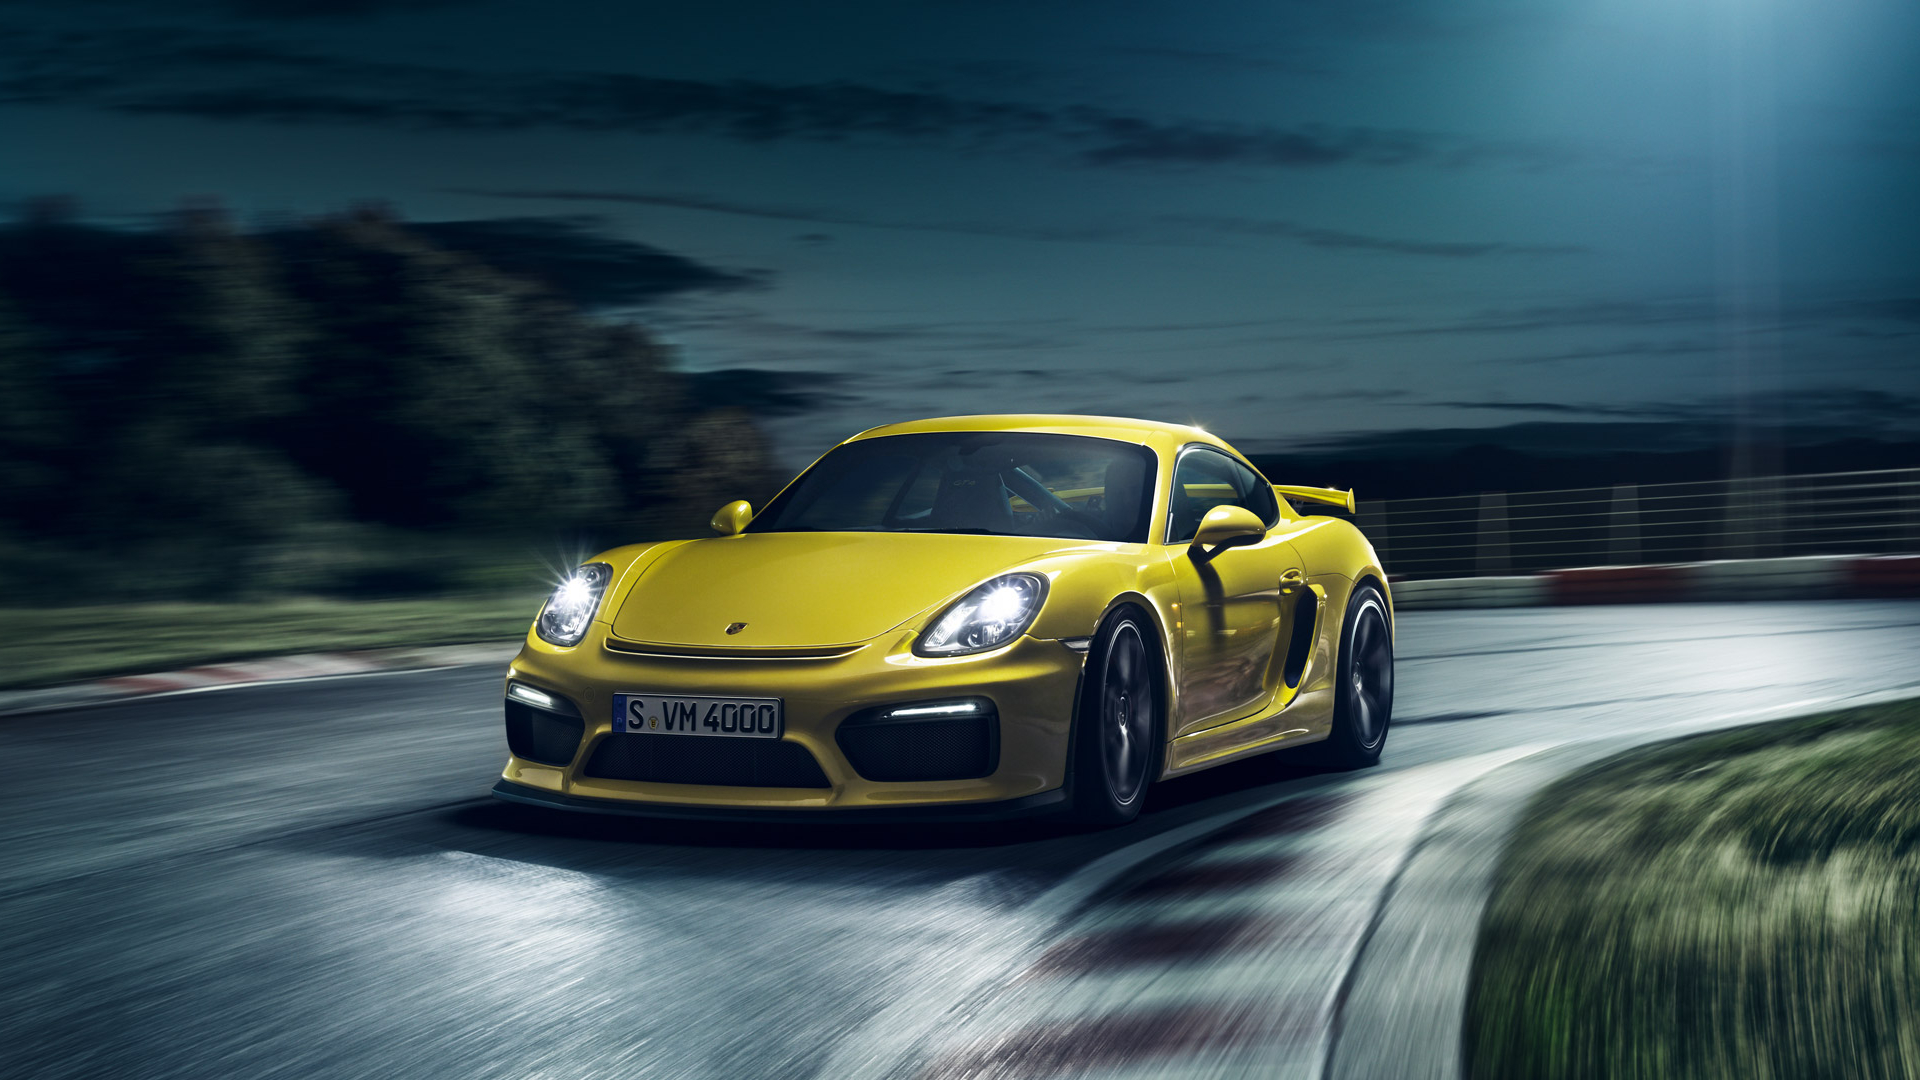 Descarga gratuita de fondo de pantalla para móvil de Porsche Caimán Gt4, Porsche Caimán, Porsche, Coche Amarillo, Vehículos, Coche.